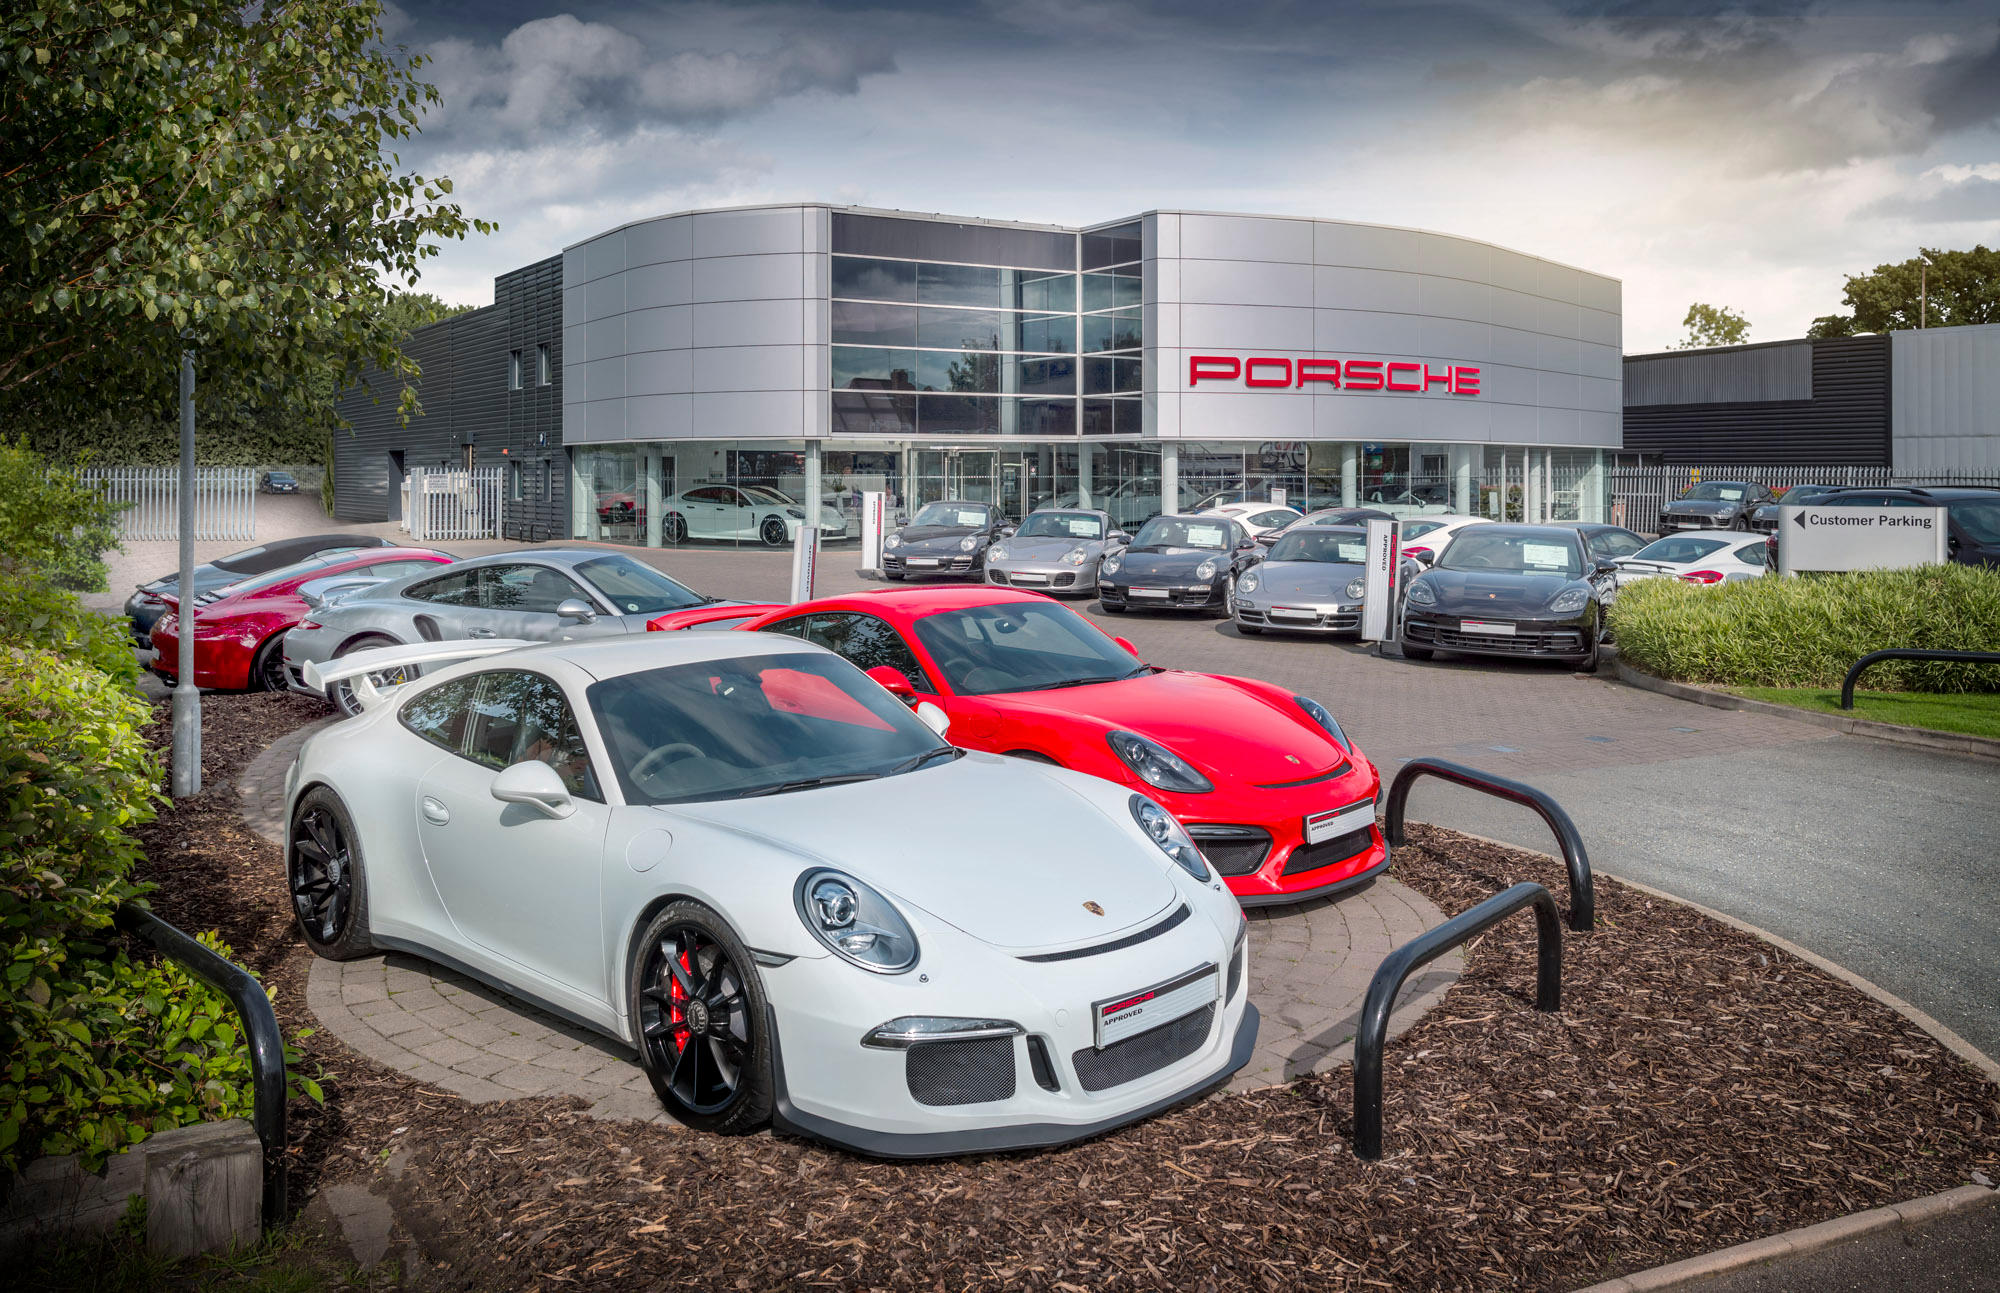 Images Porsche Centre Sutton Coldfield